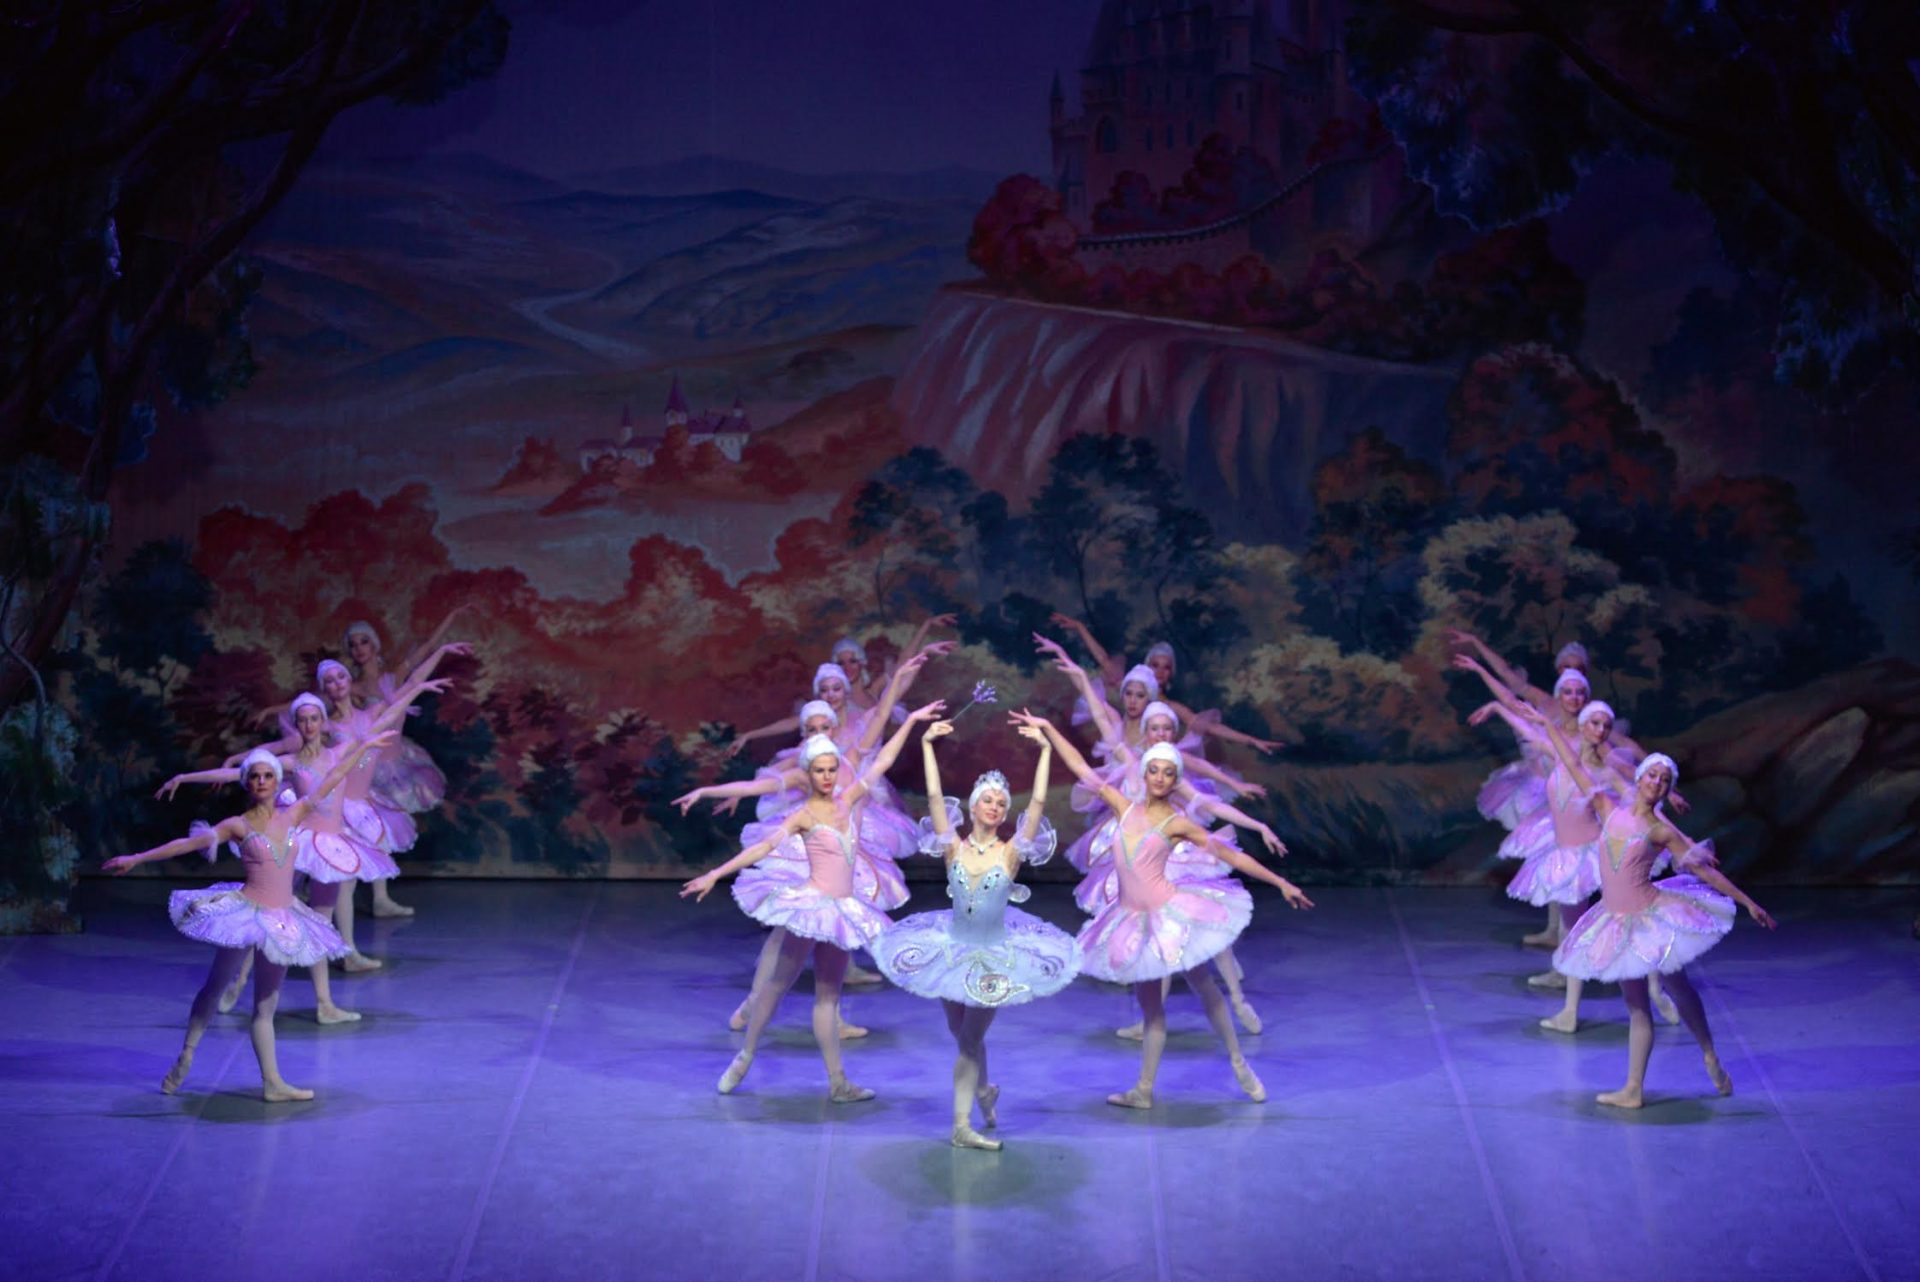 Spettacoli, al teatro “Gentile” di Cittanova arriva il balletto di Mosca